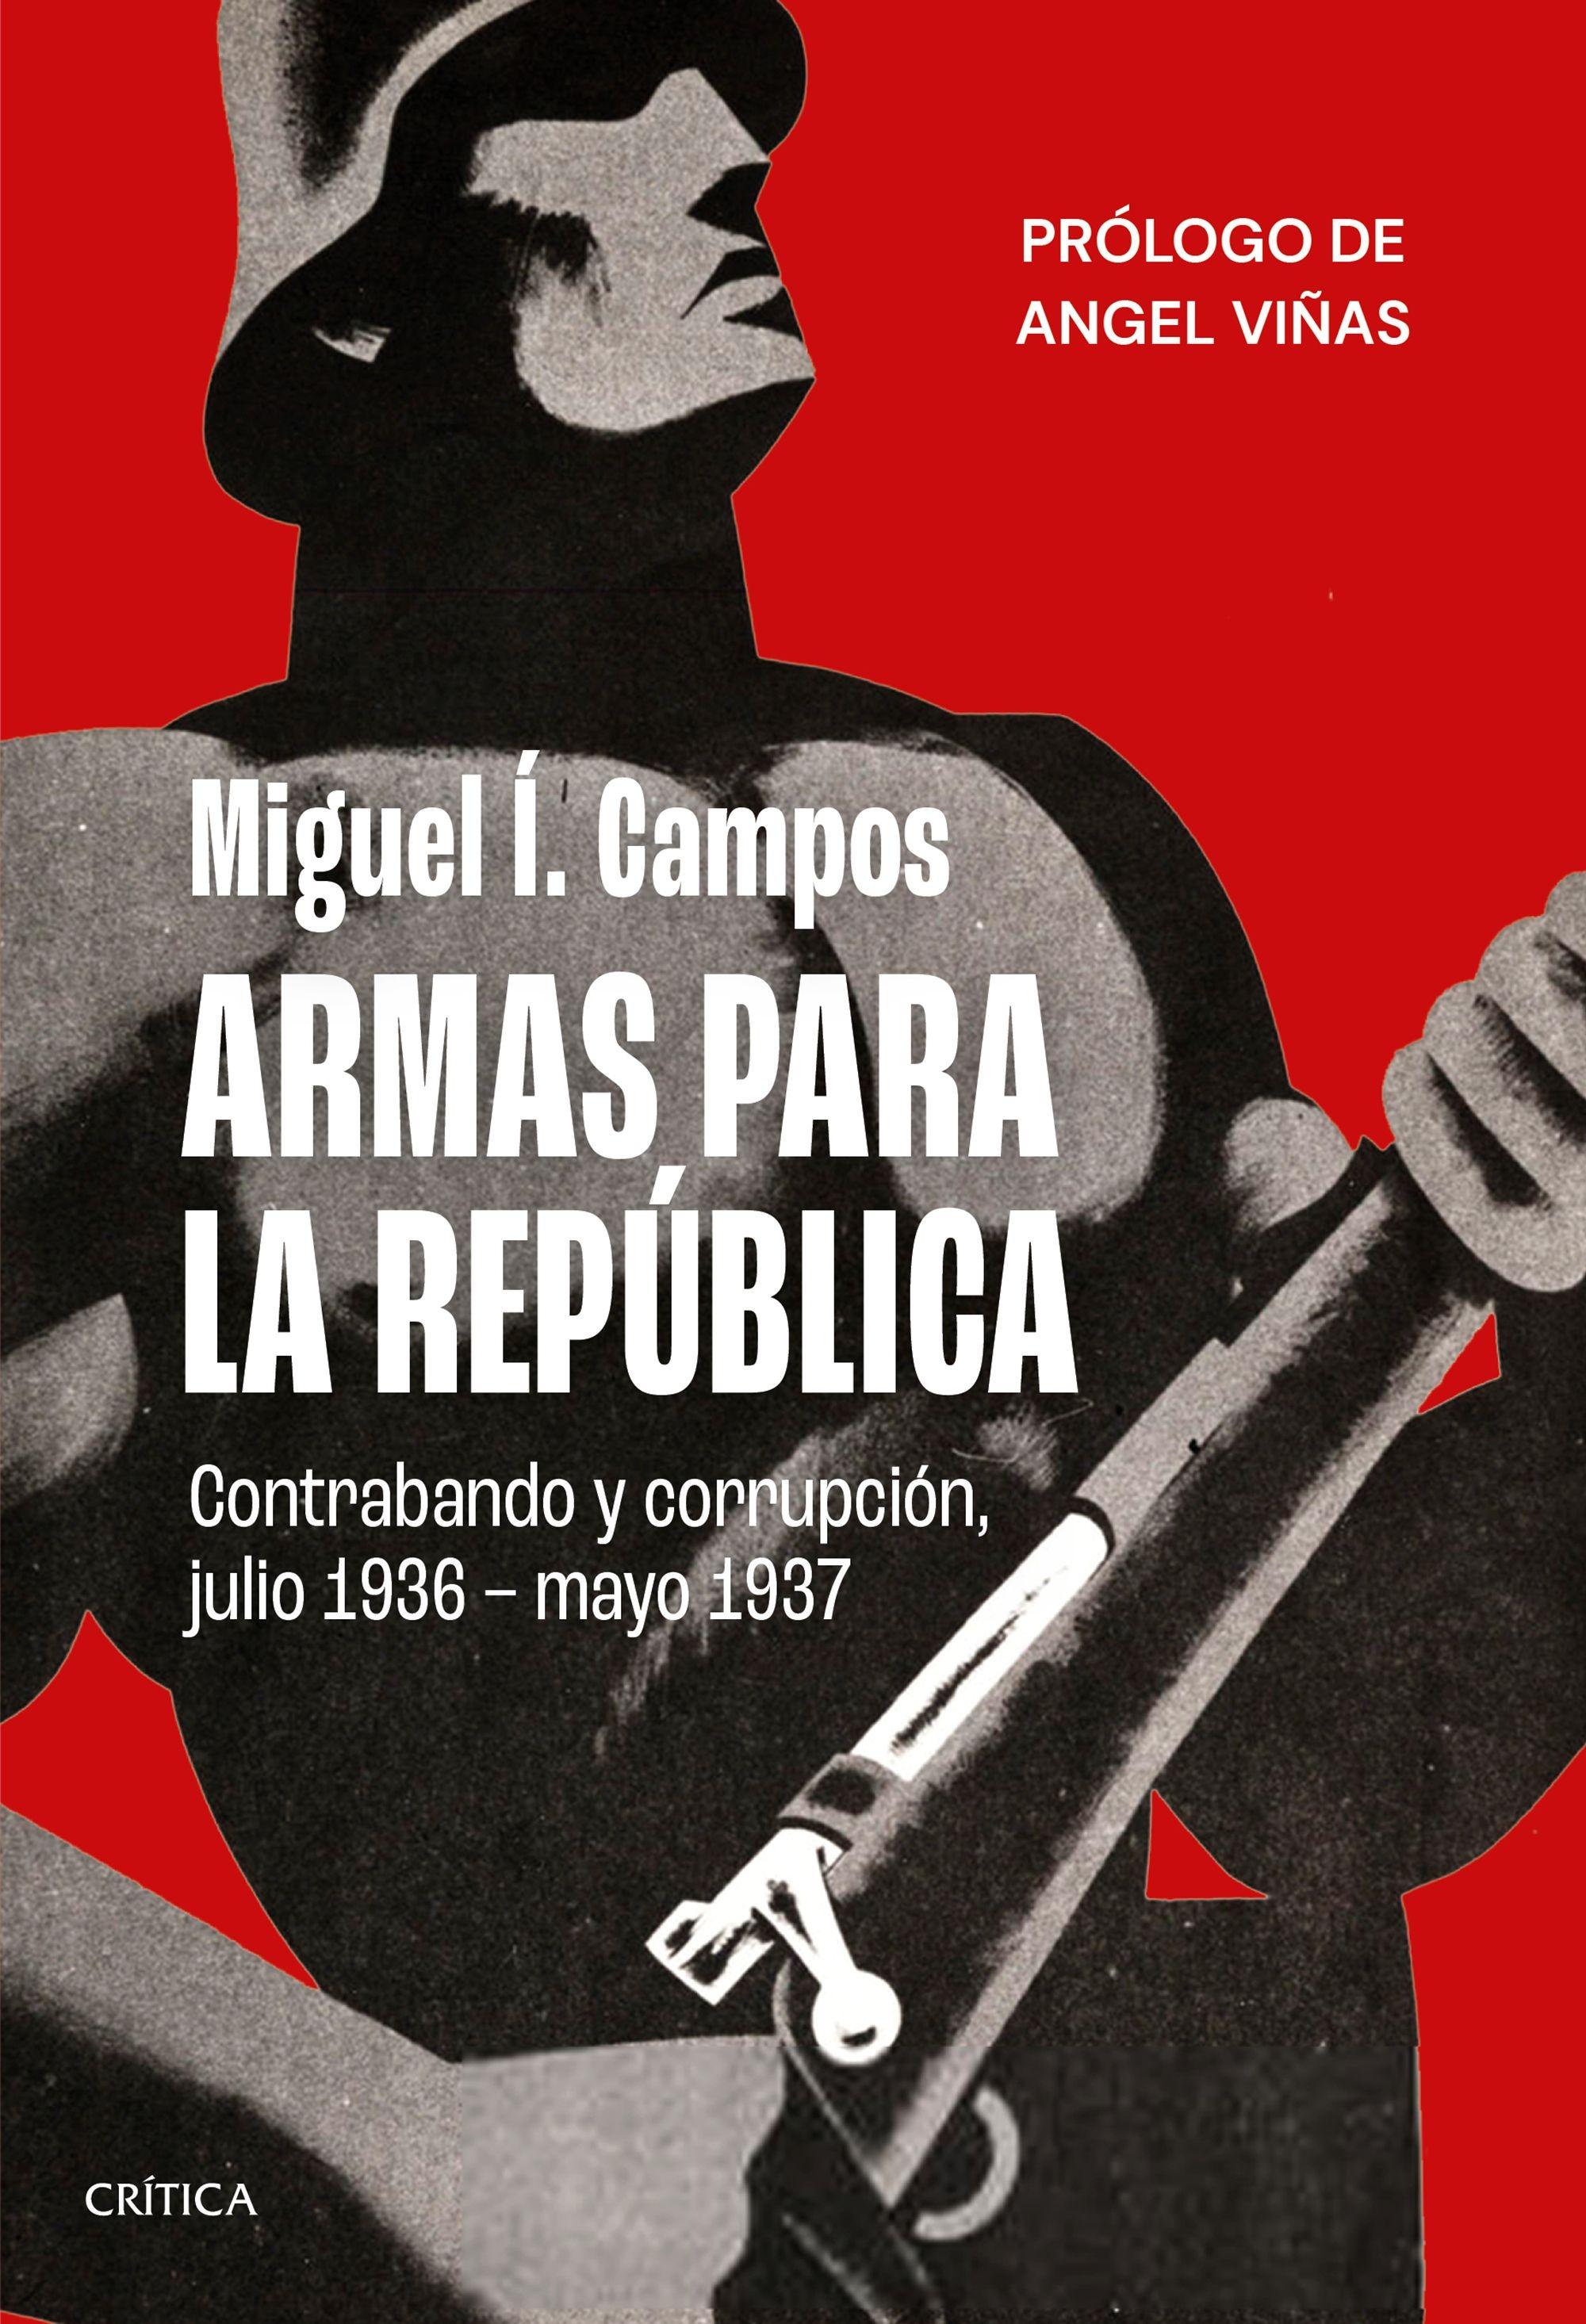 Armas para la República "Contrabando y corrupción, julio 1936 - mayo 1937"